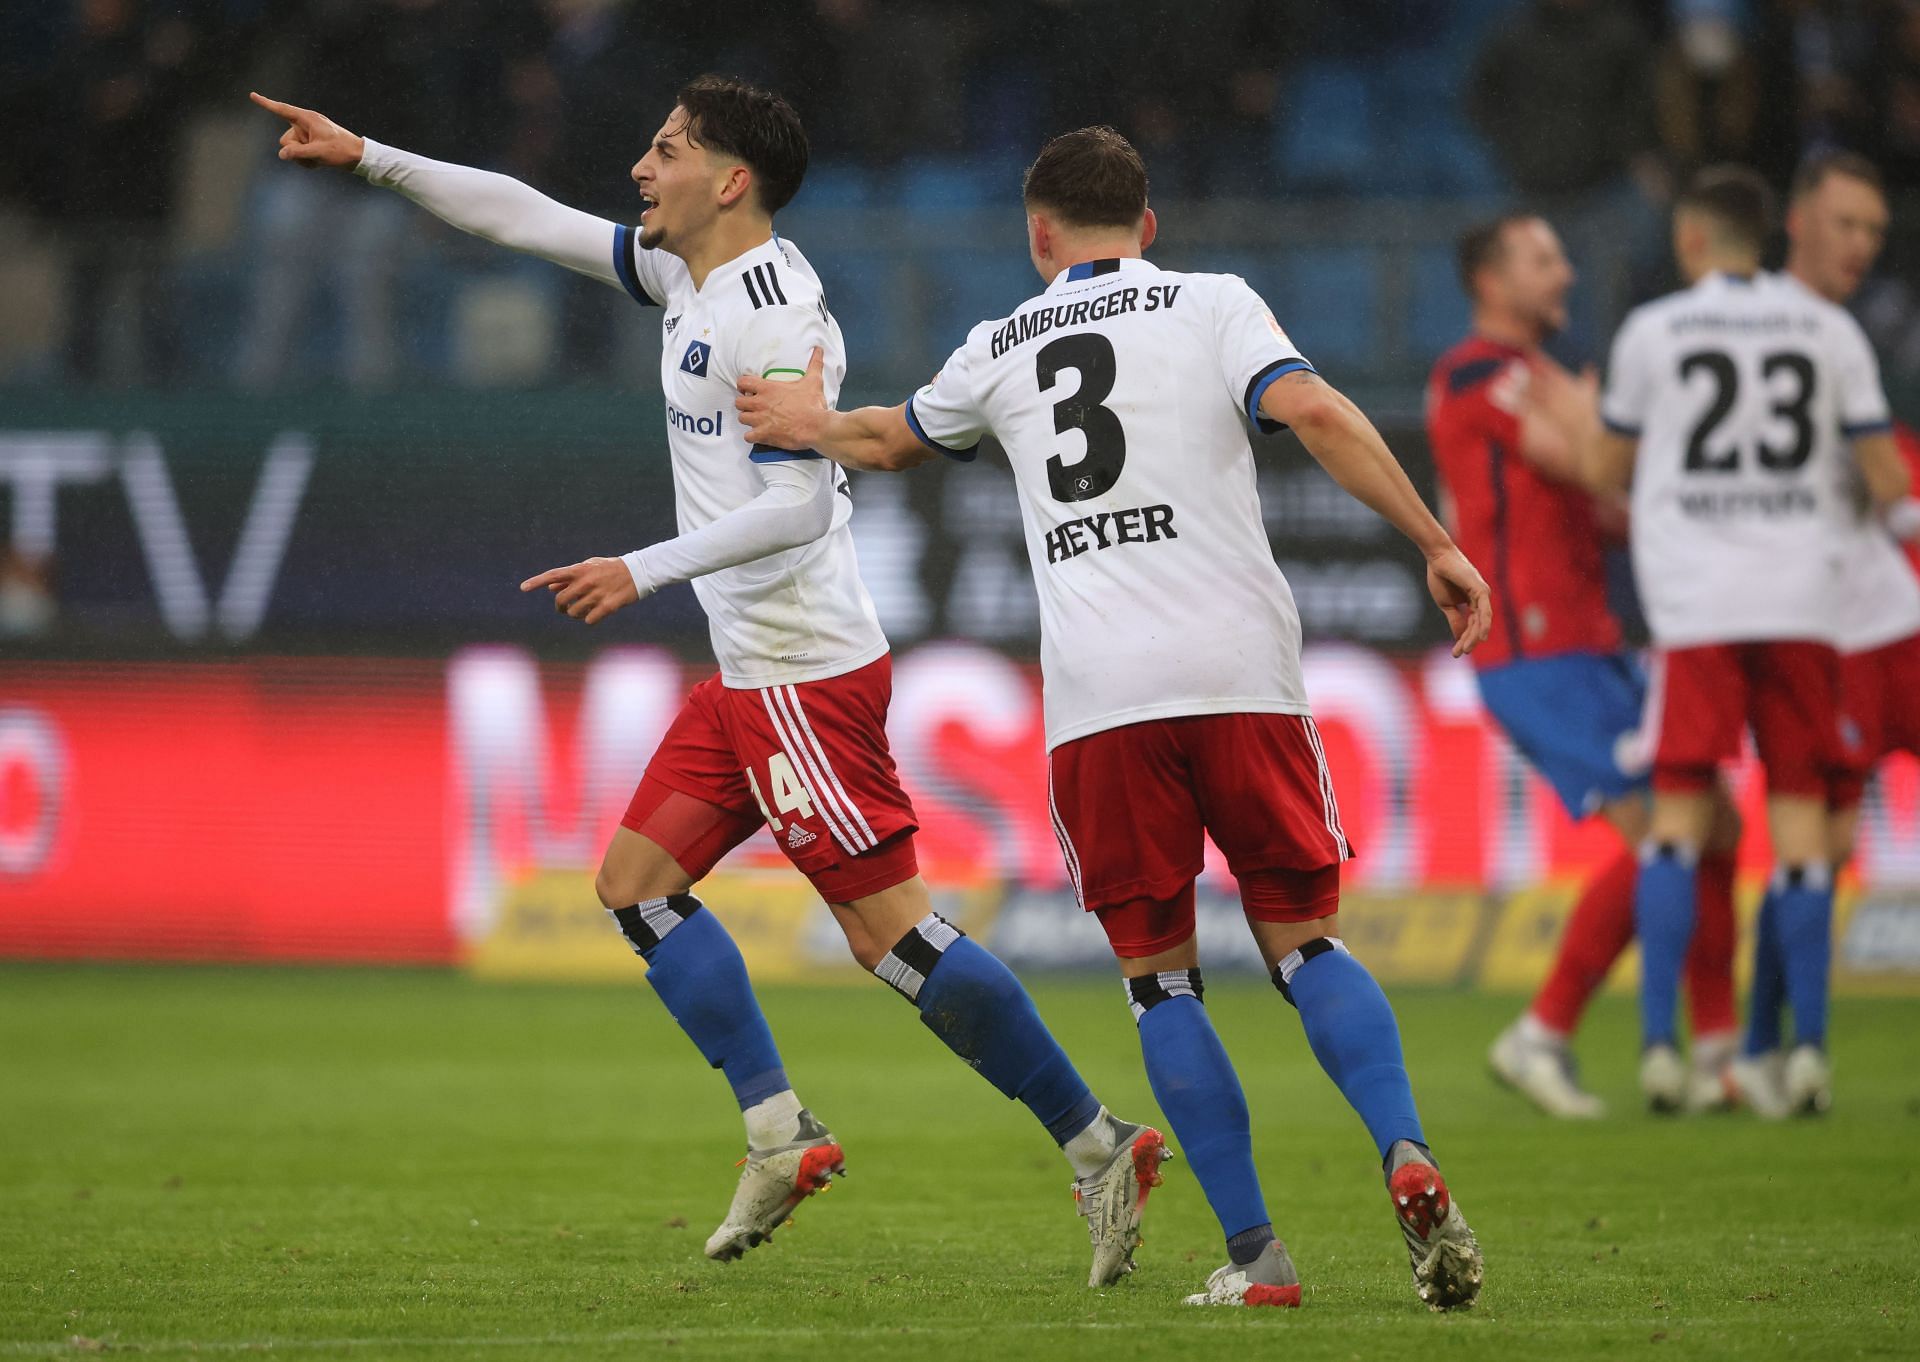 Hamburg will face Schalke 04 on Saturday